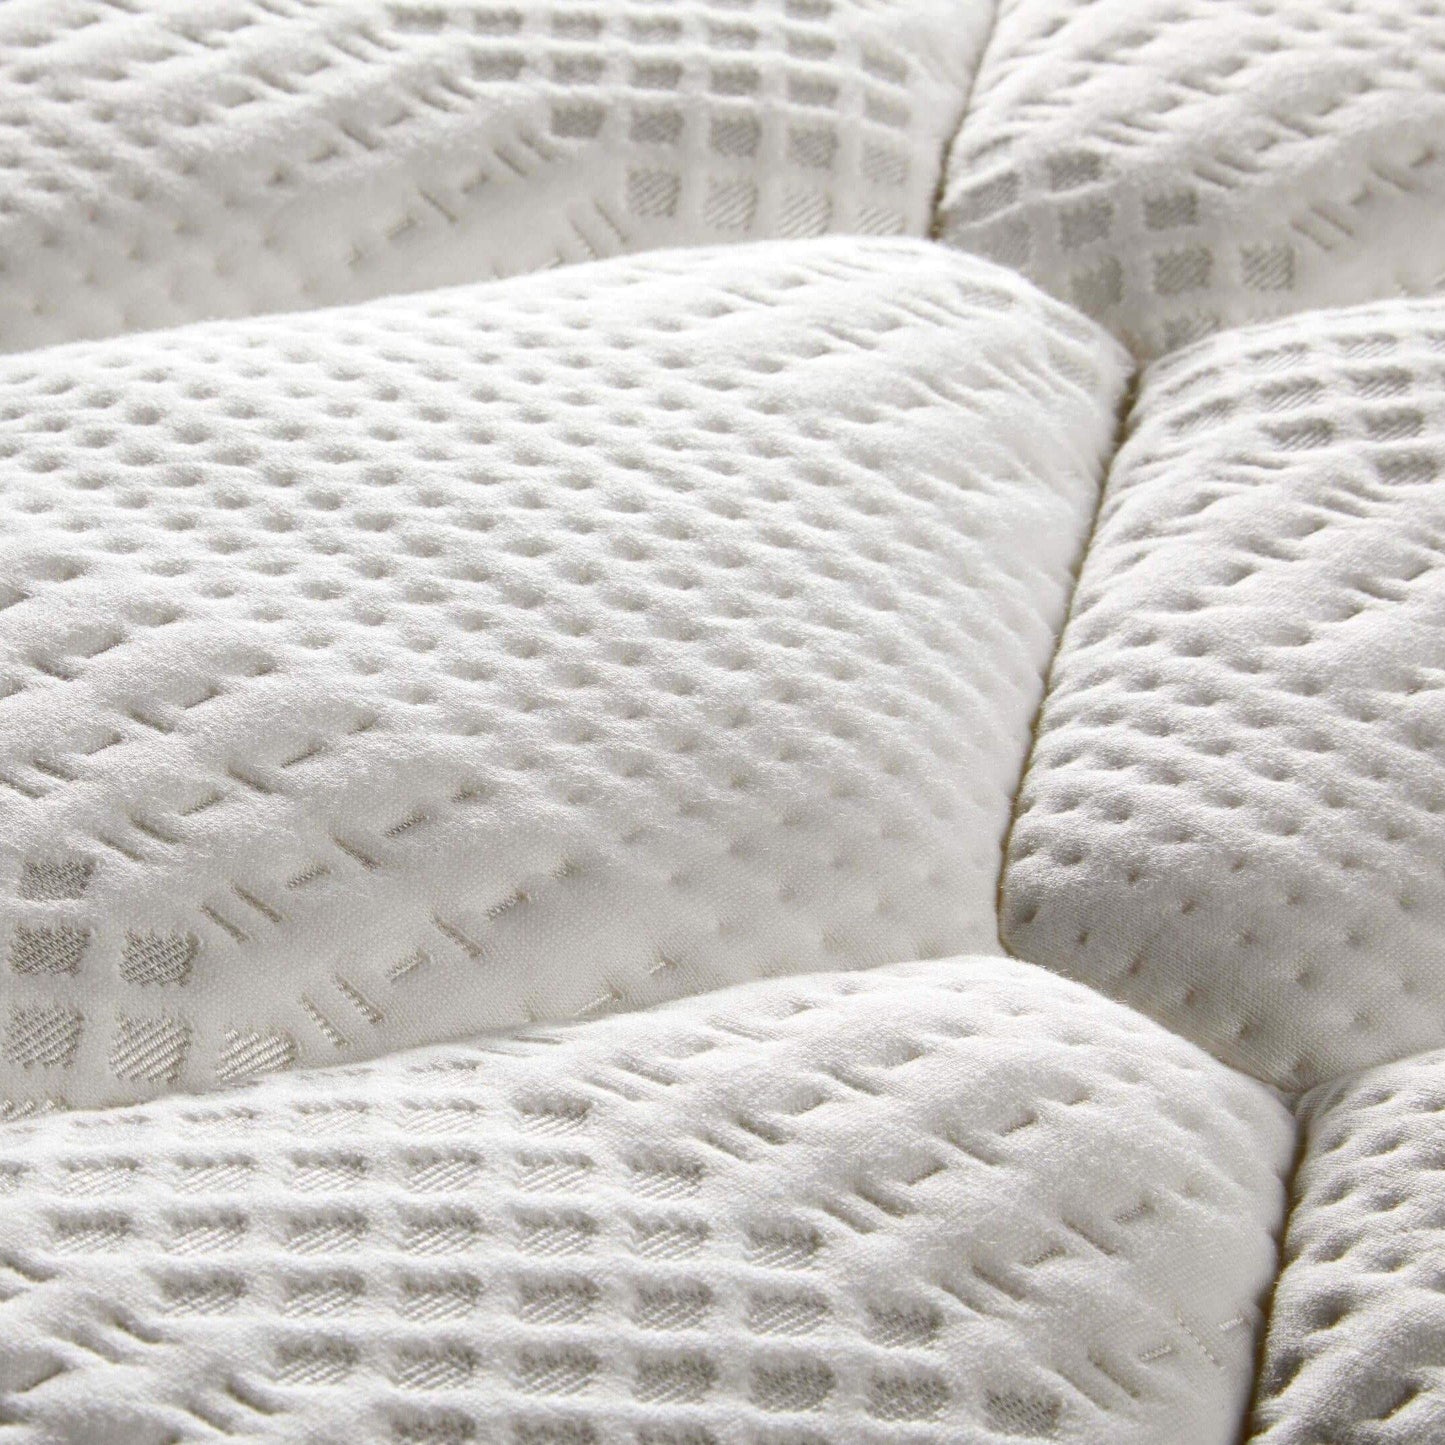 SleepSoul bliss 800 pocket spring and memory foam pillow top standard single mattress top